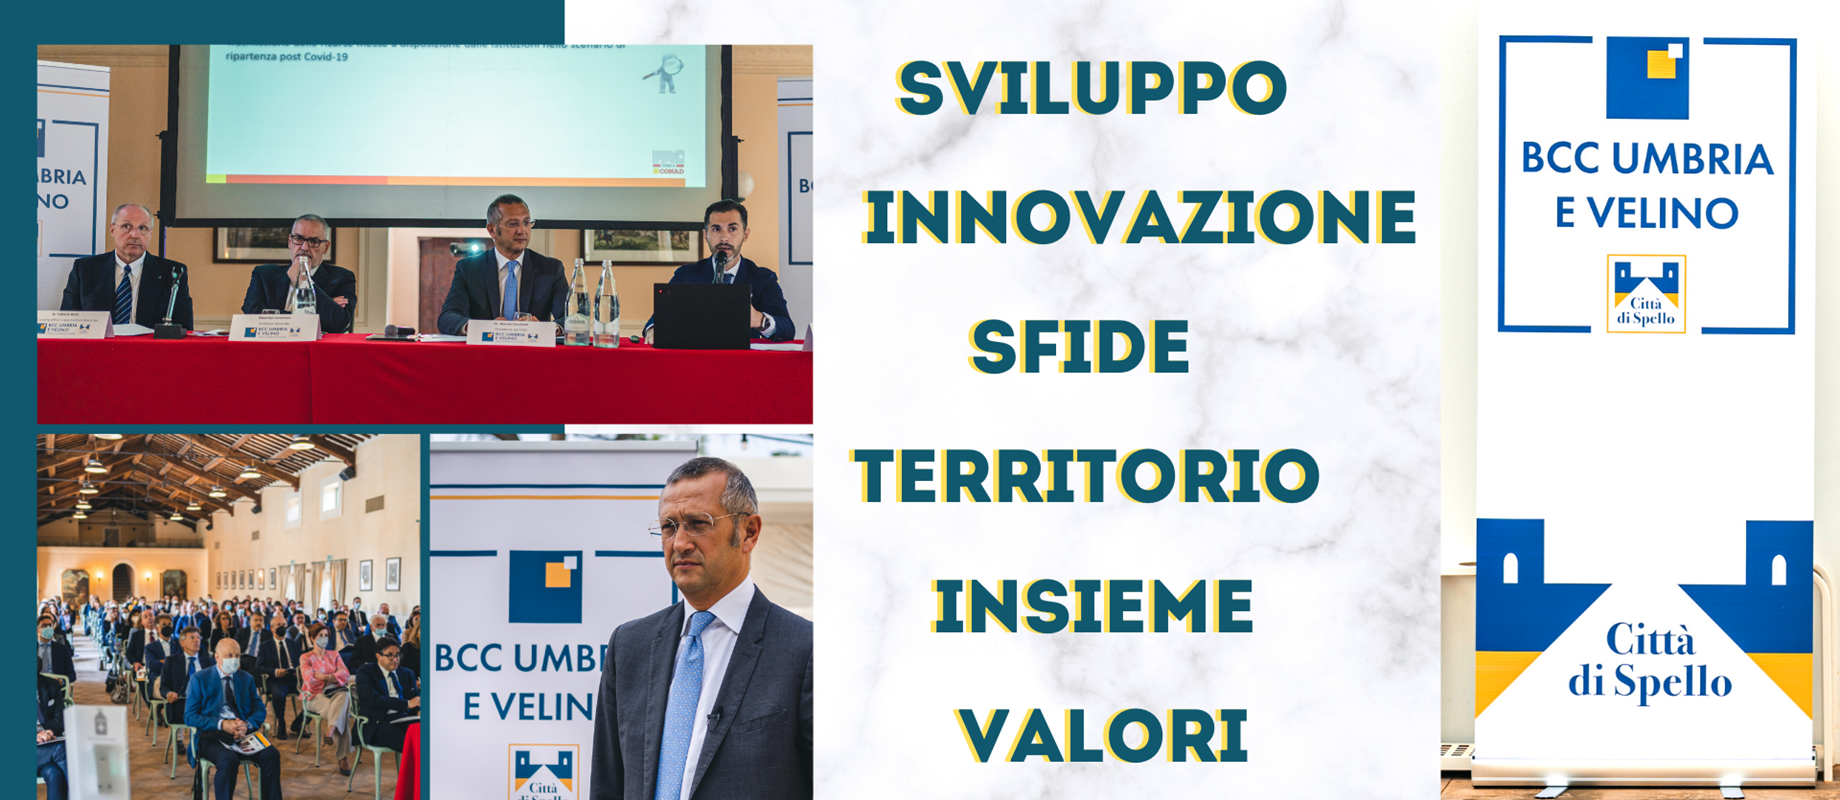 PERSONAE Convention del personale della nuova BCC dell'Umbria e del Velino 